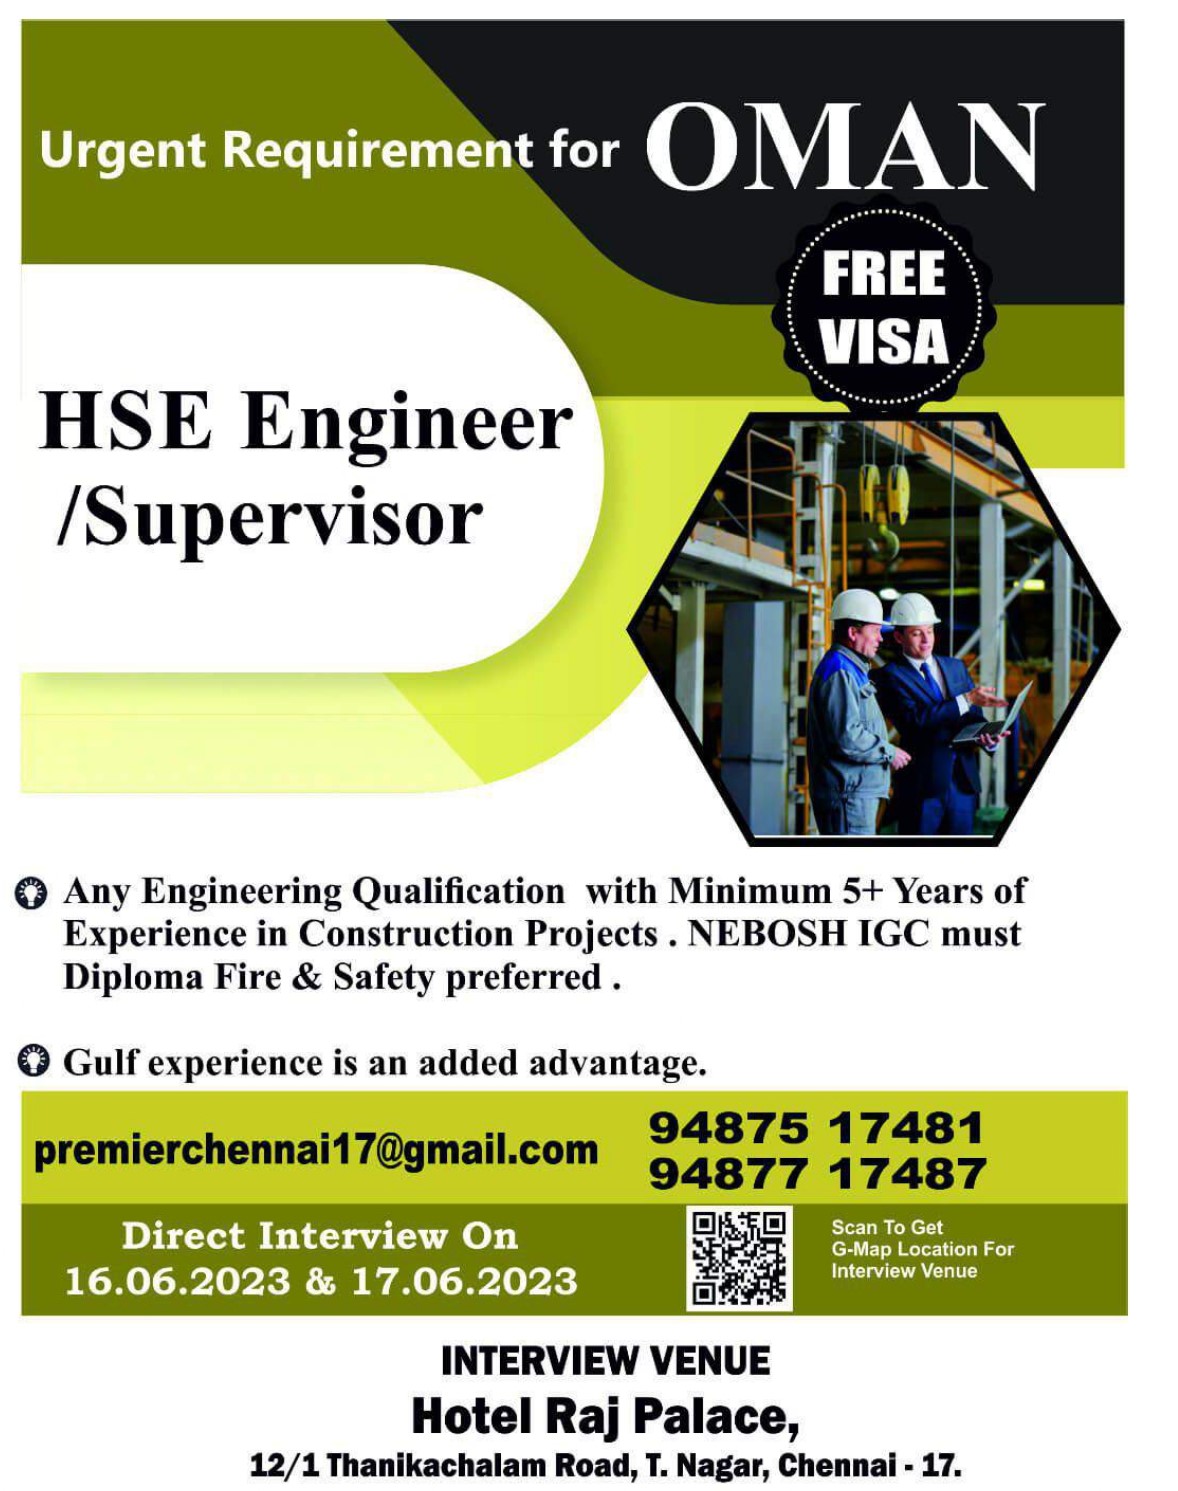 HSE Engineer & Supervisor Oman